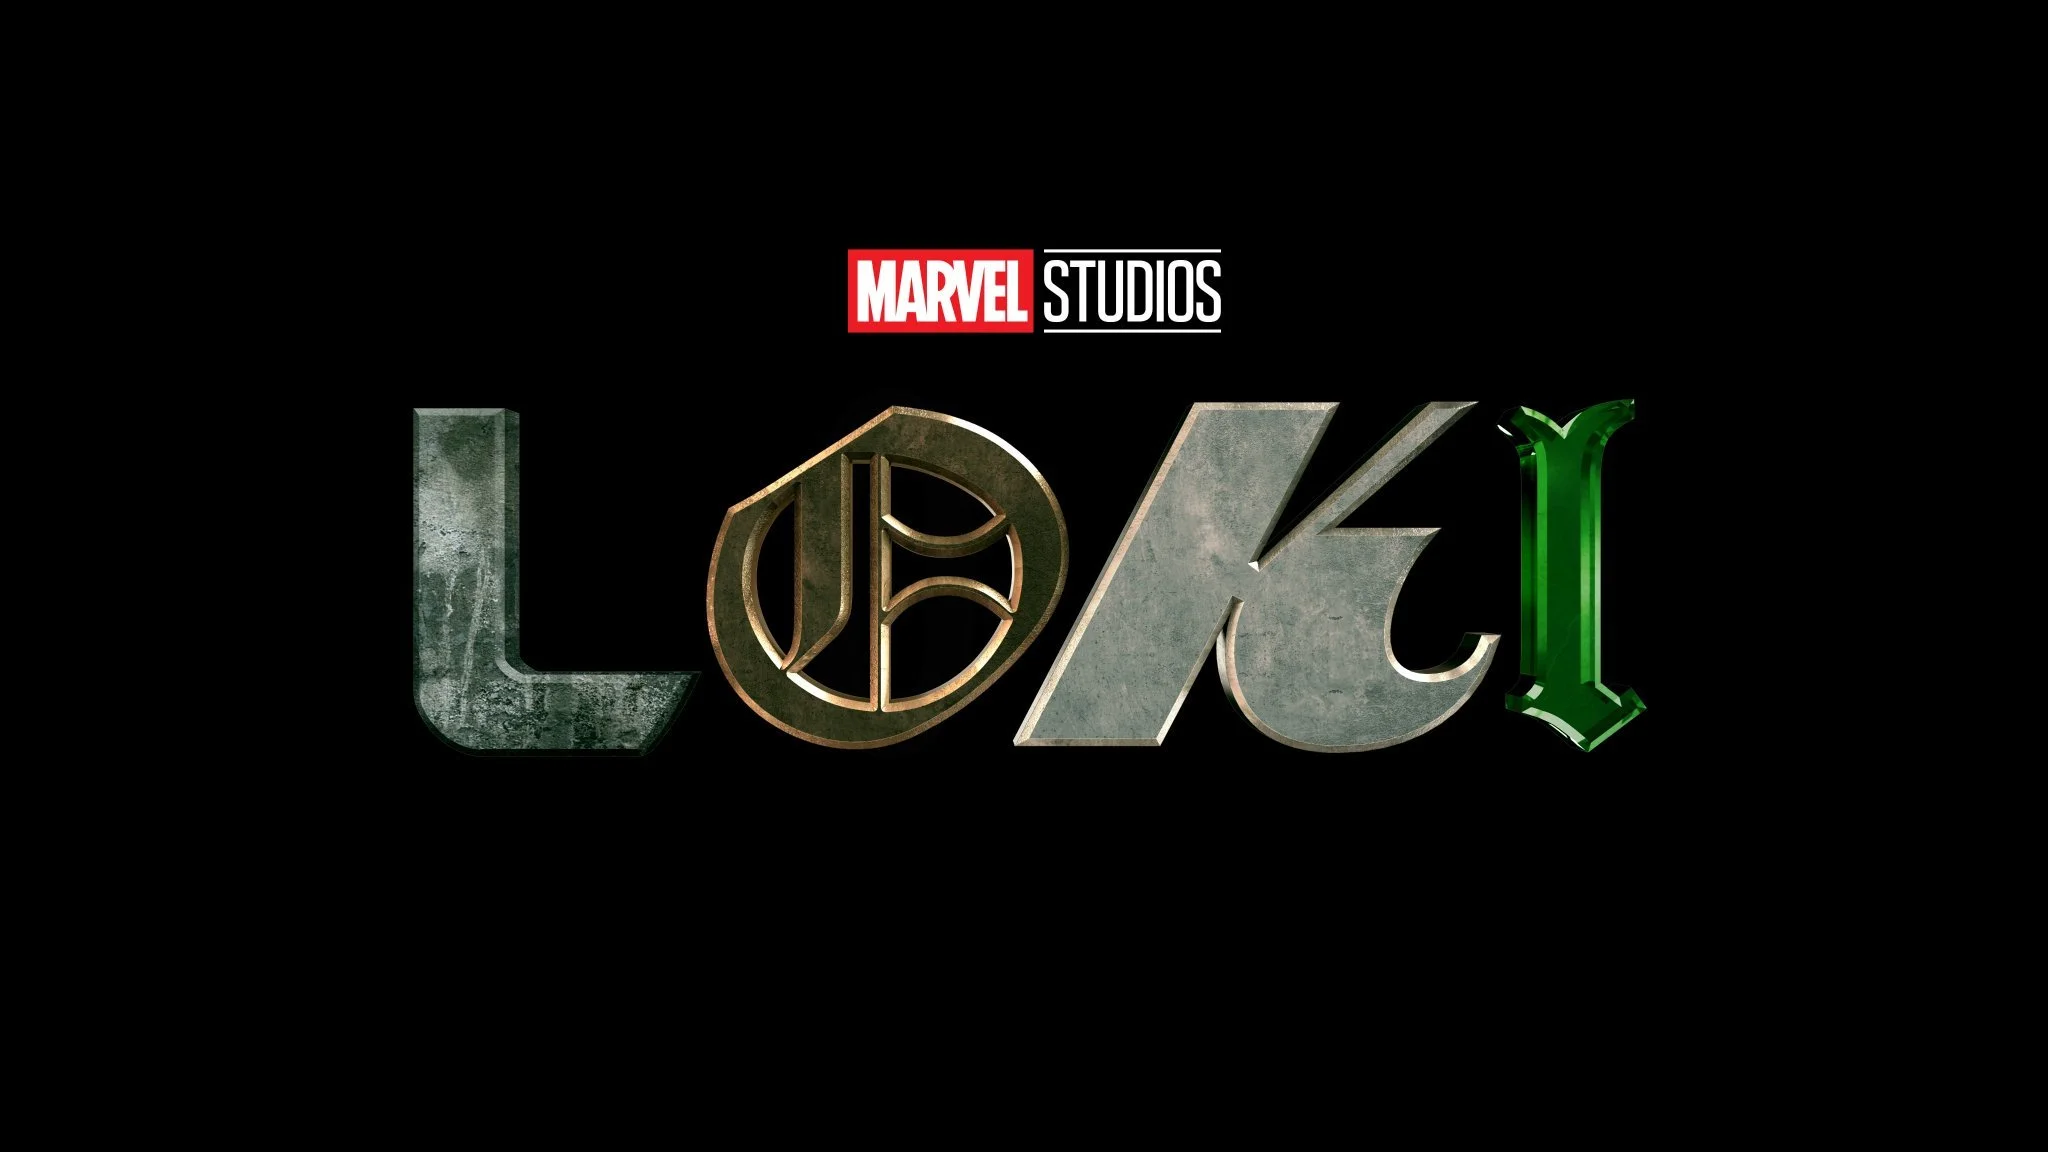 «Локи», «ВандаВижен», «Соколиный глаз», «Сокол и Зимний солдат»: все о сериалах Marvel с SDCC 2019 - фото 3